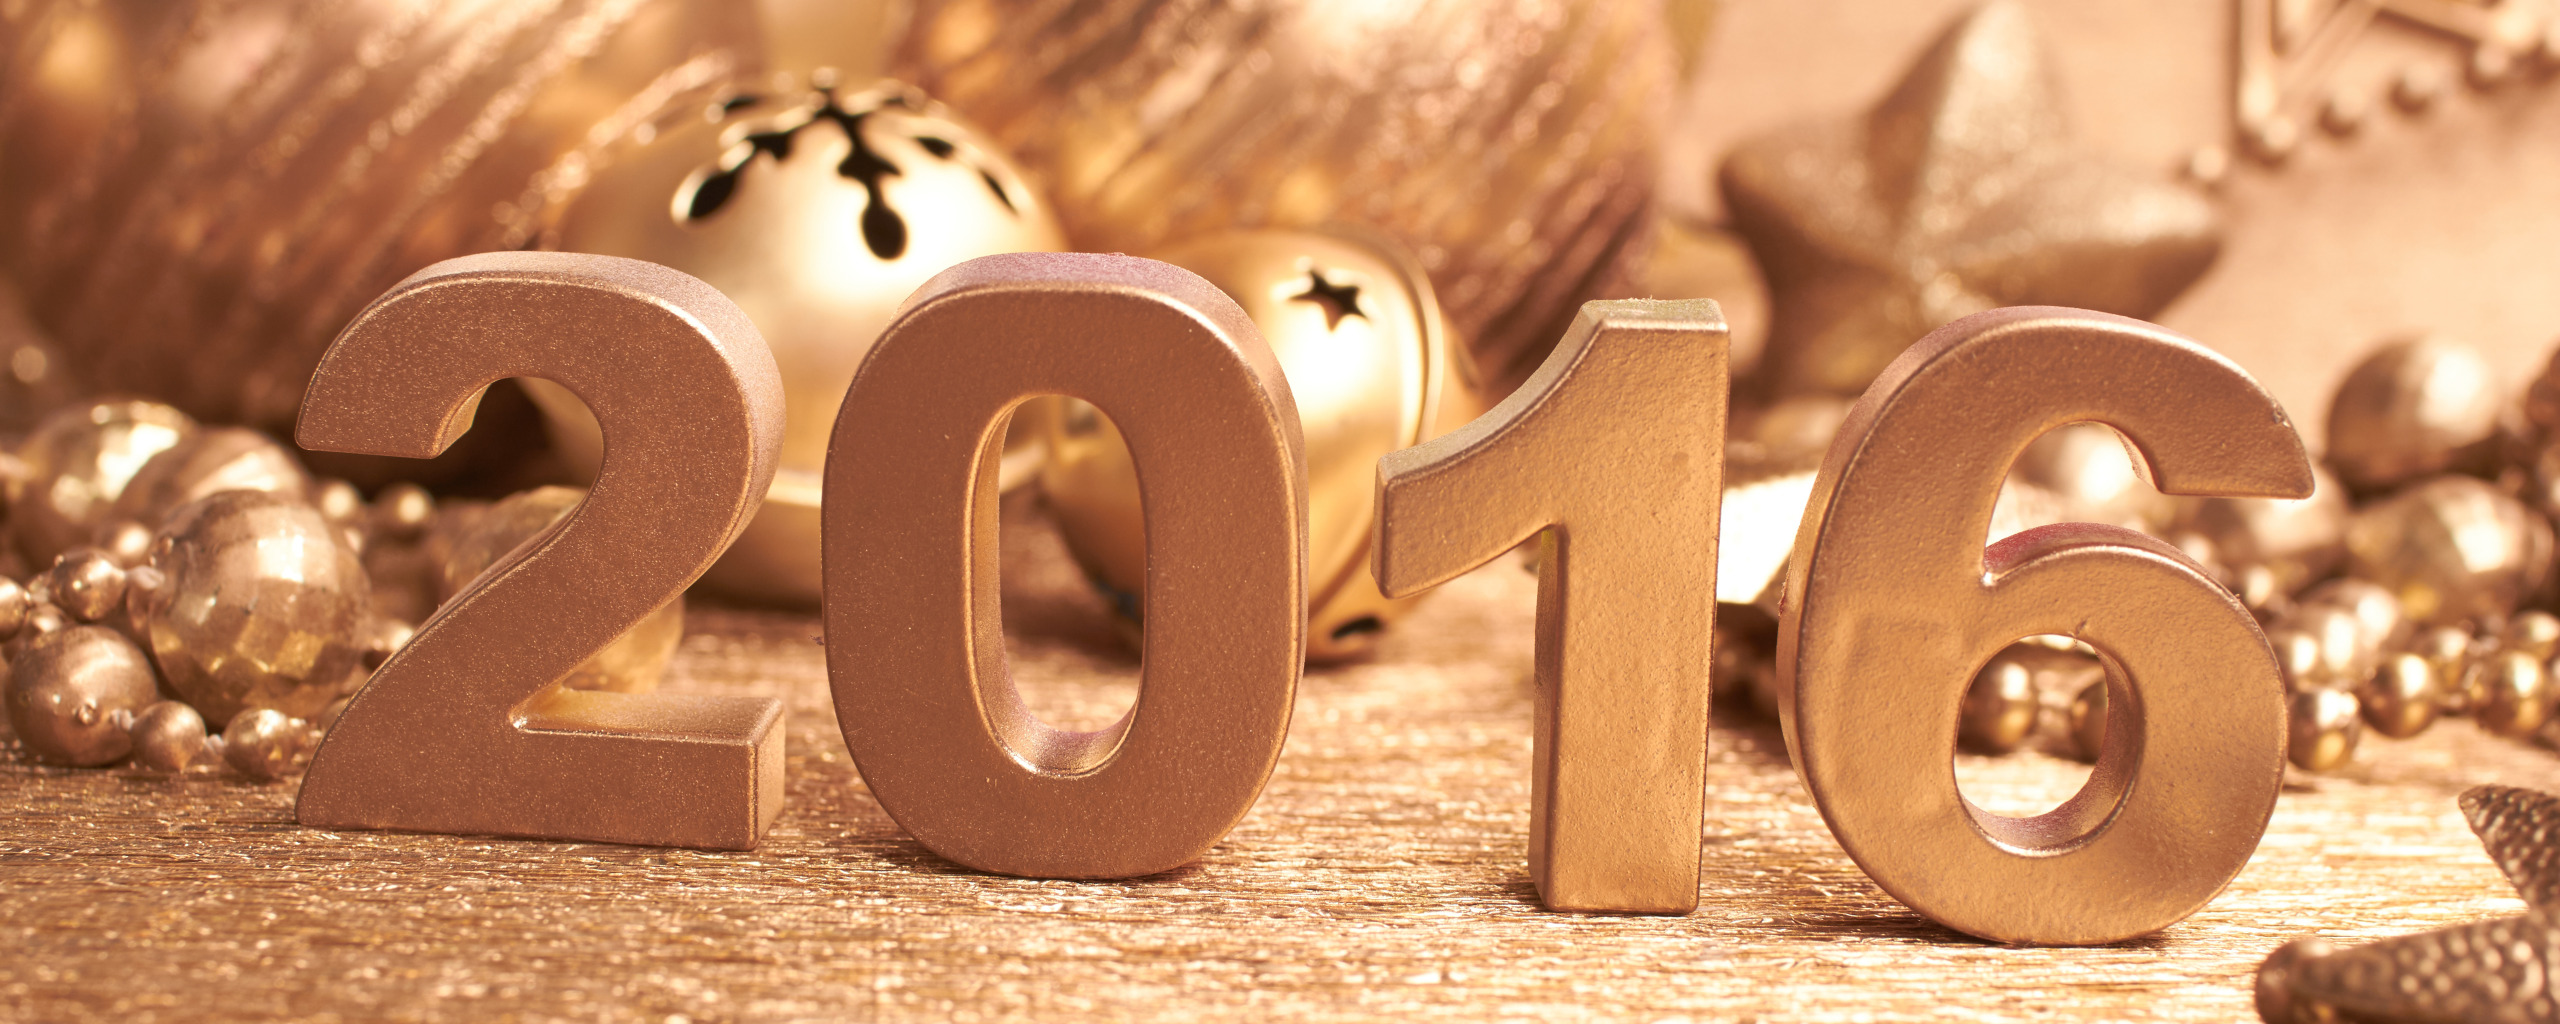 Нужны новые обои. 2016 Год. Новый год 2016. Денежные новогодние картинки на рабочий стол. Топ обои новый год 2011.